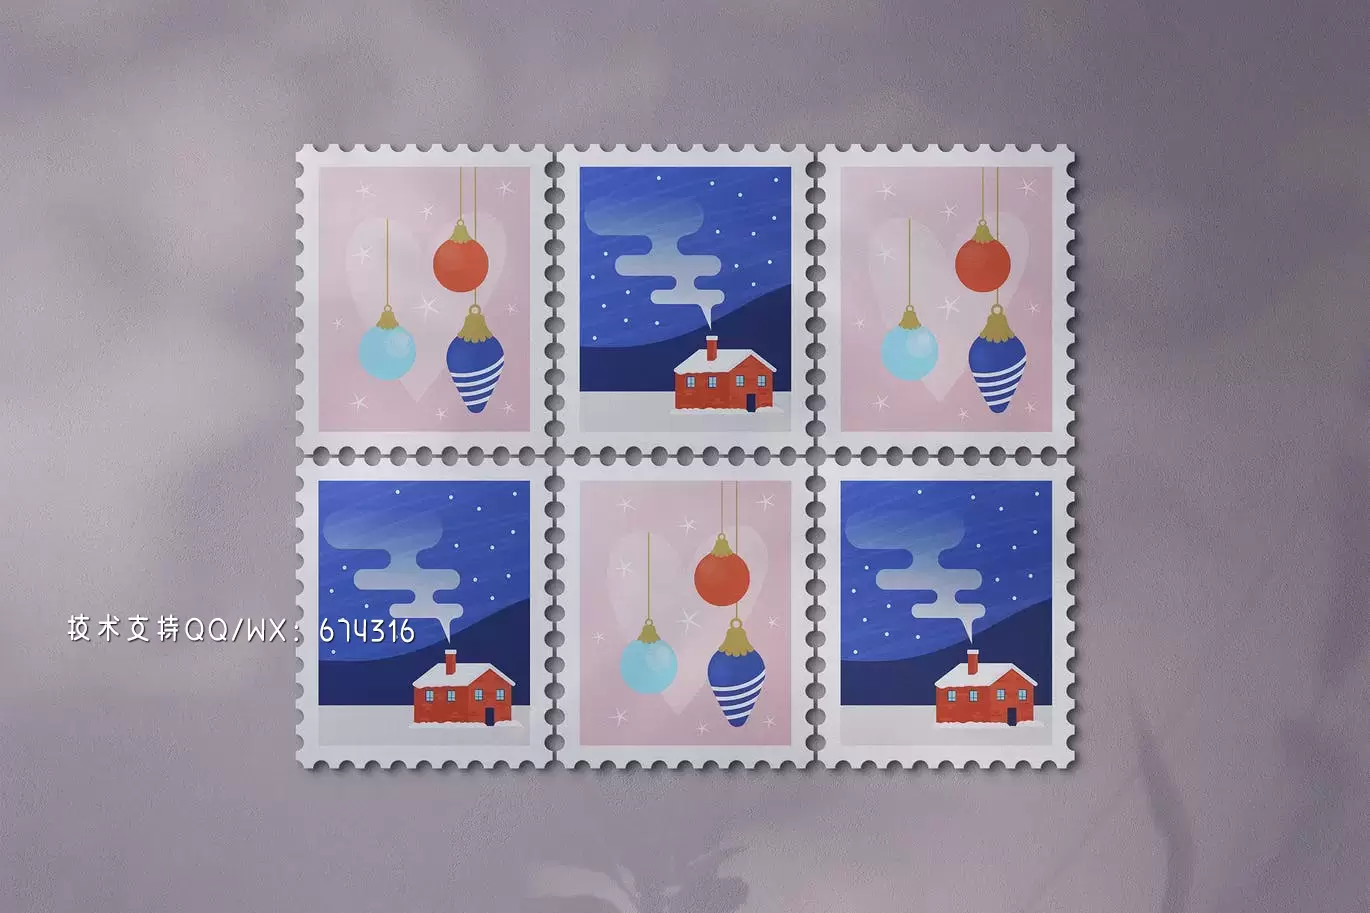 邮票产品收藏样机 (PSD)免费下载